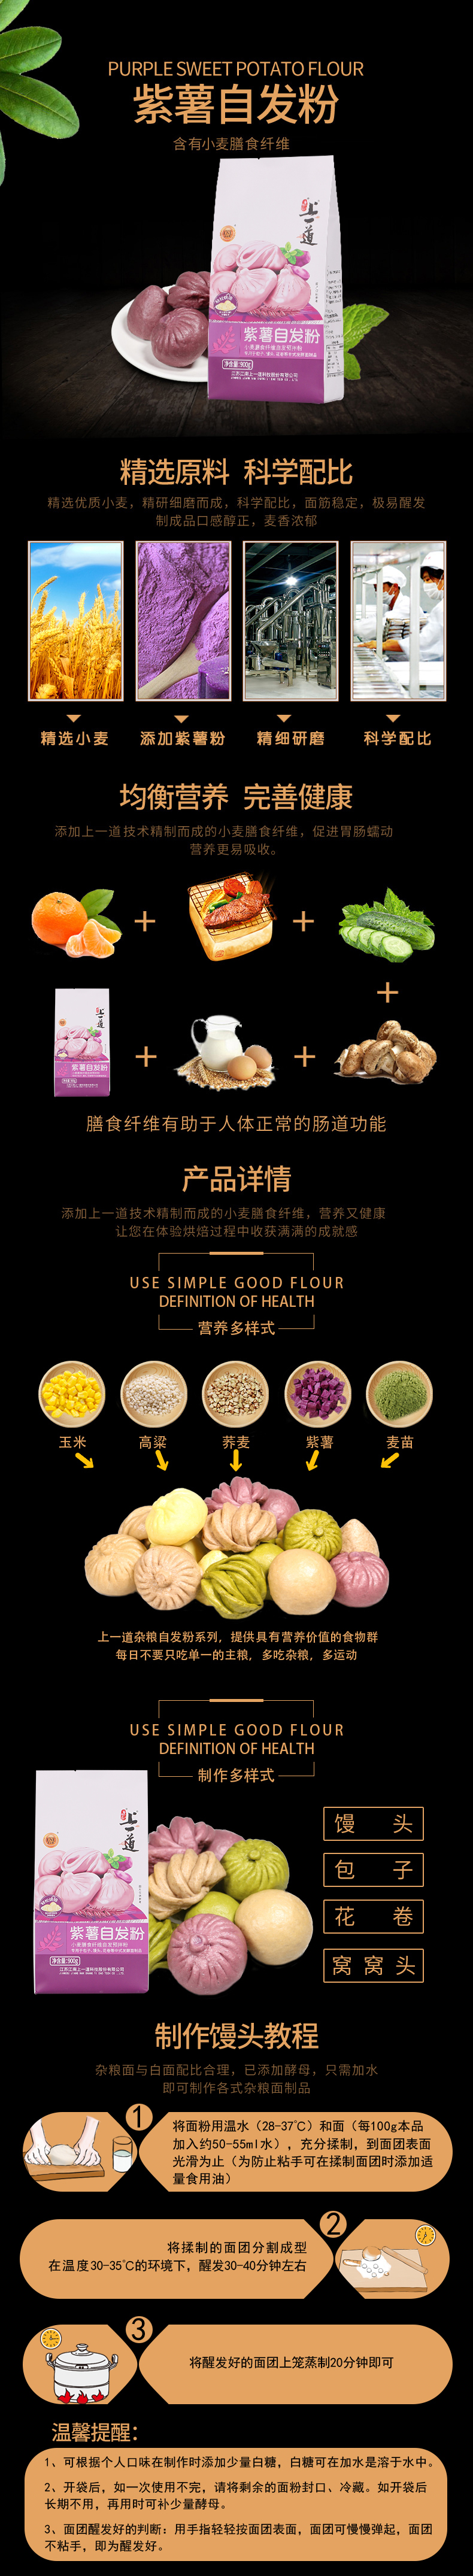 900紫薯自发粉详情页.jpg